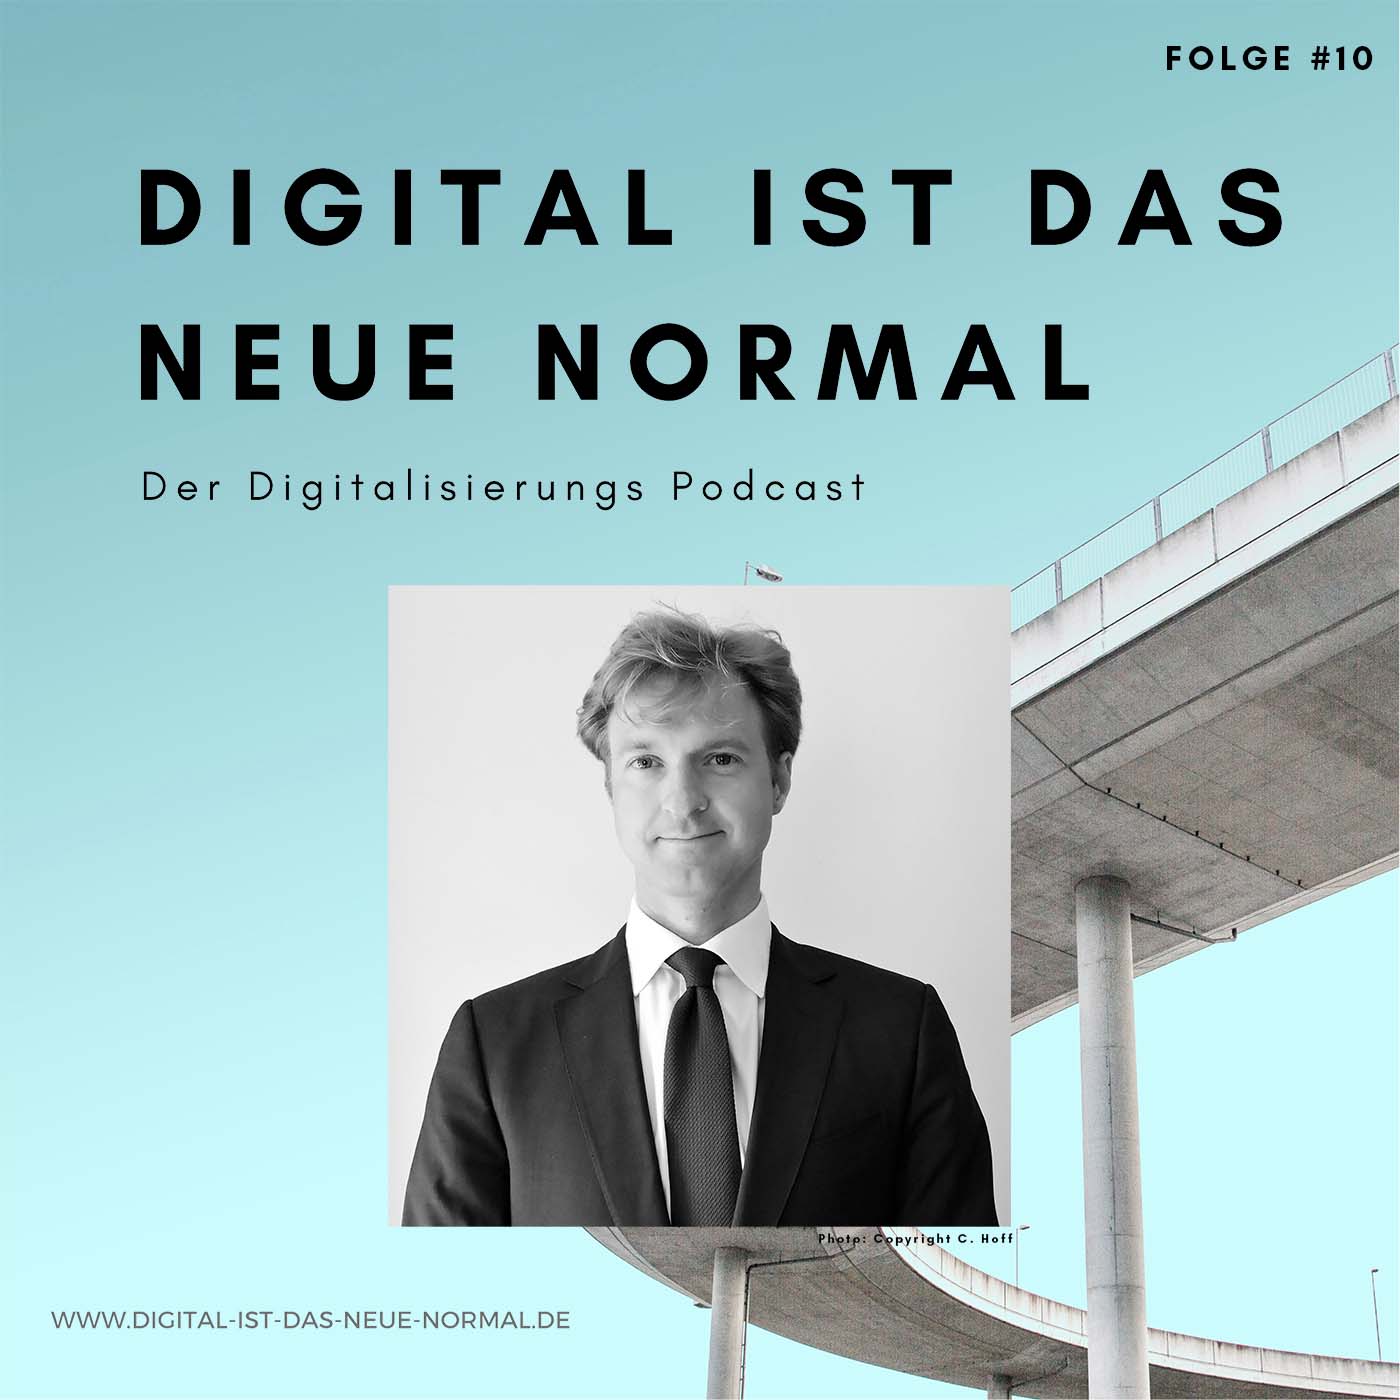 Digitalisierung & EU Recht - wie der Brussels Effect, die neue KI Regulierung der EU  - Der Digitalisierungs Podcast - Digital ist das Neue Normal von Sören F. Sörries und Thomas Flick